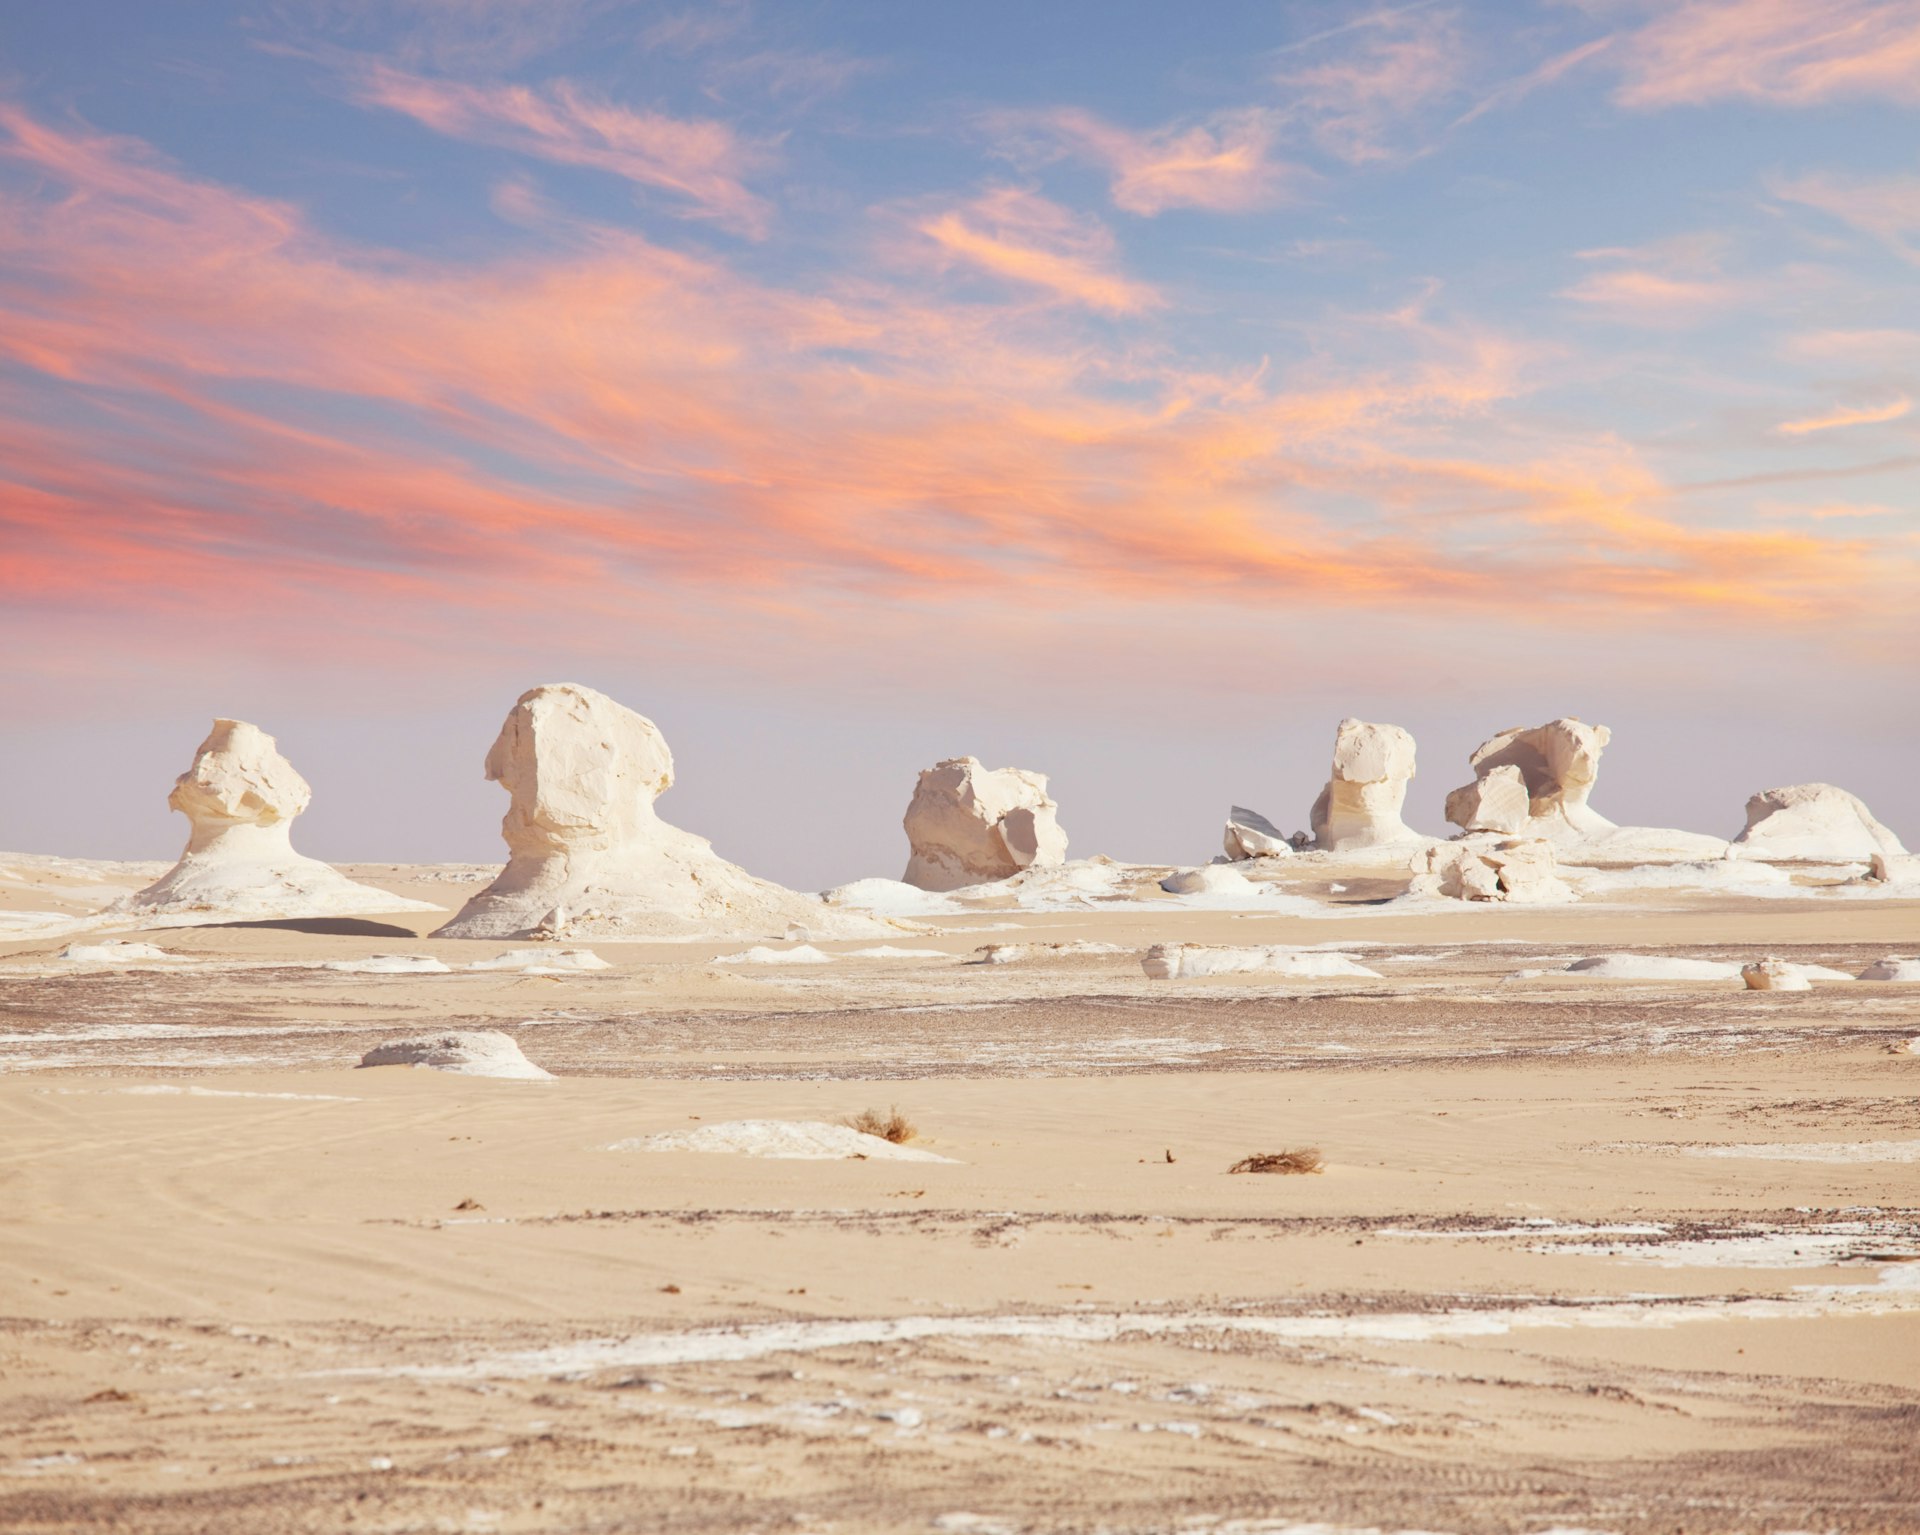 White chalk rock formations in the White Desert, Egypt